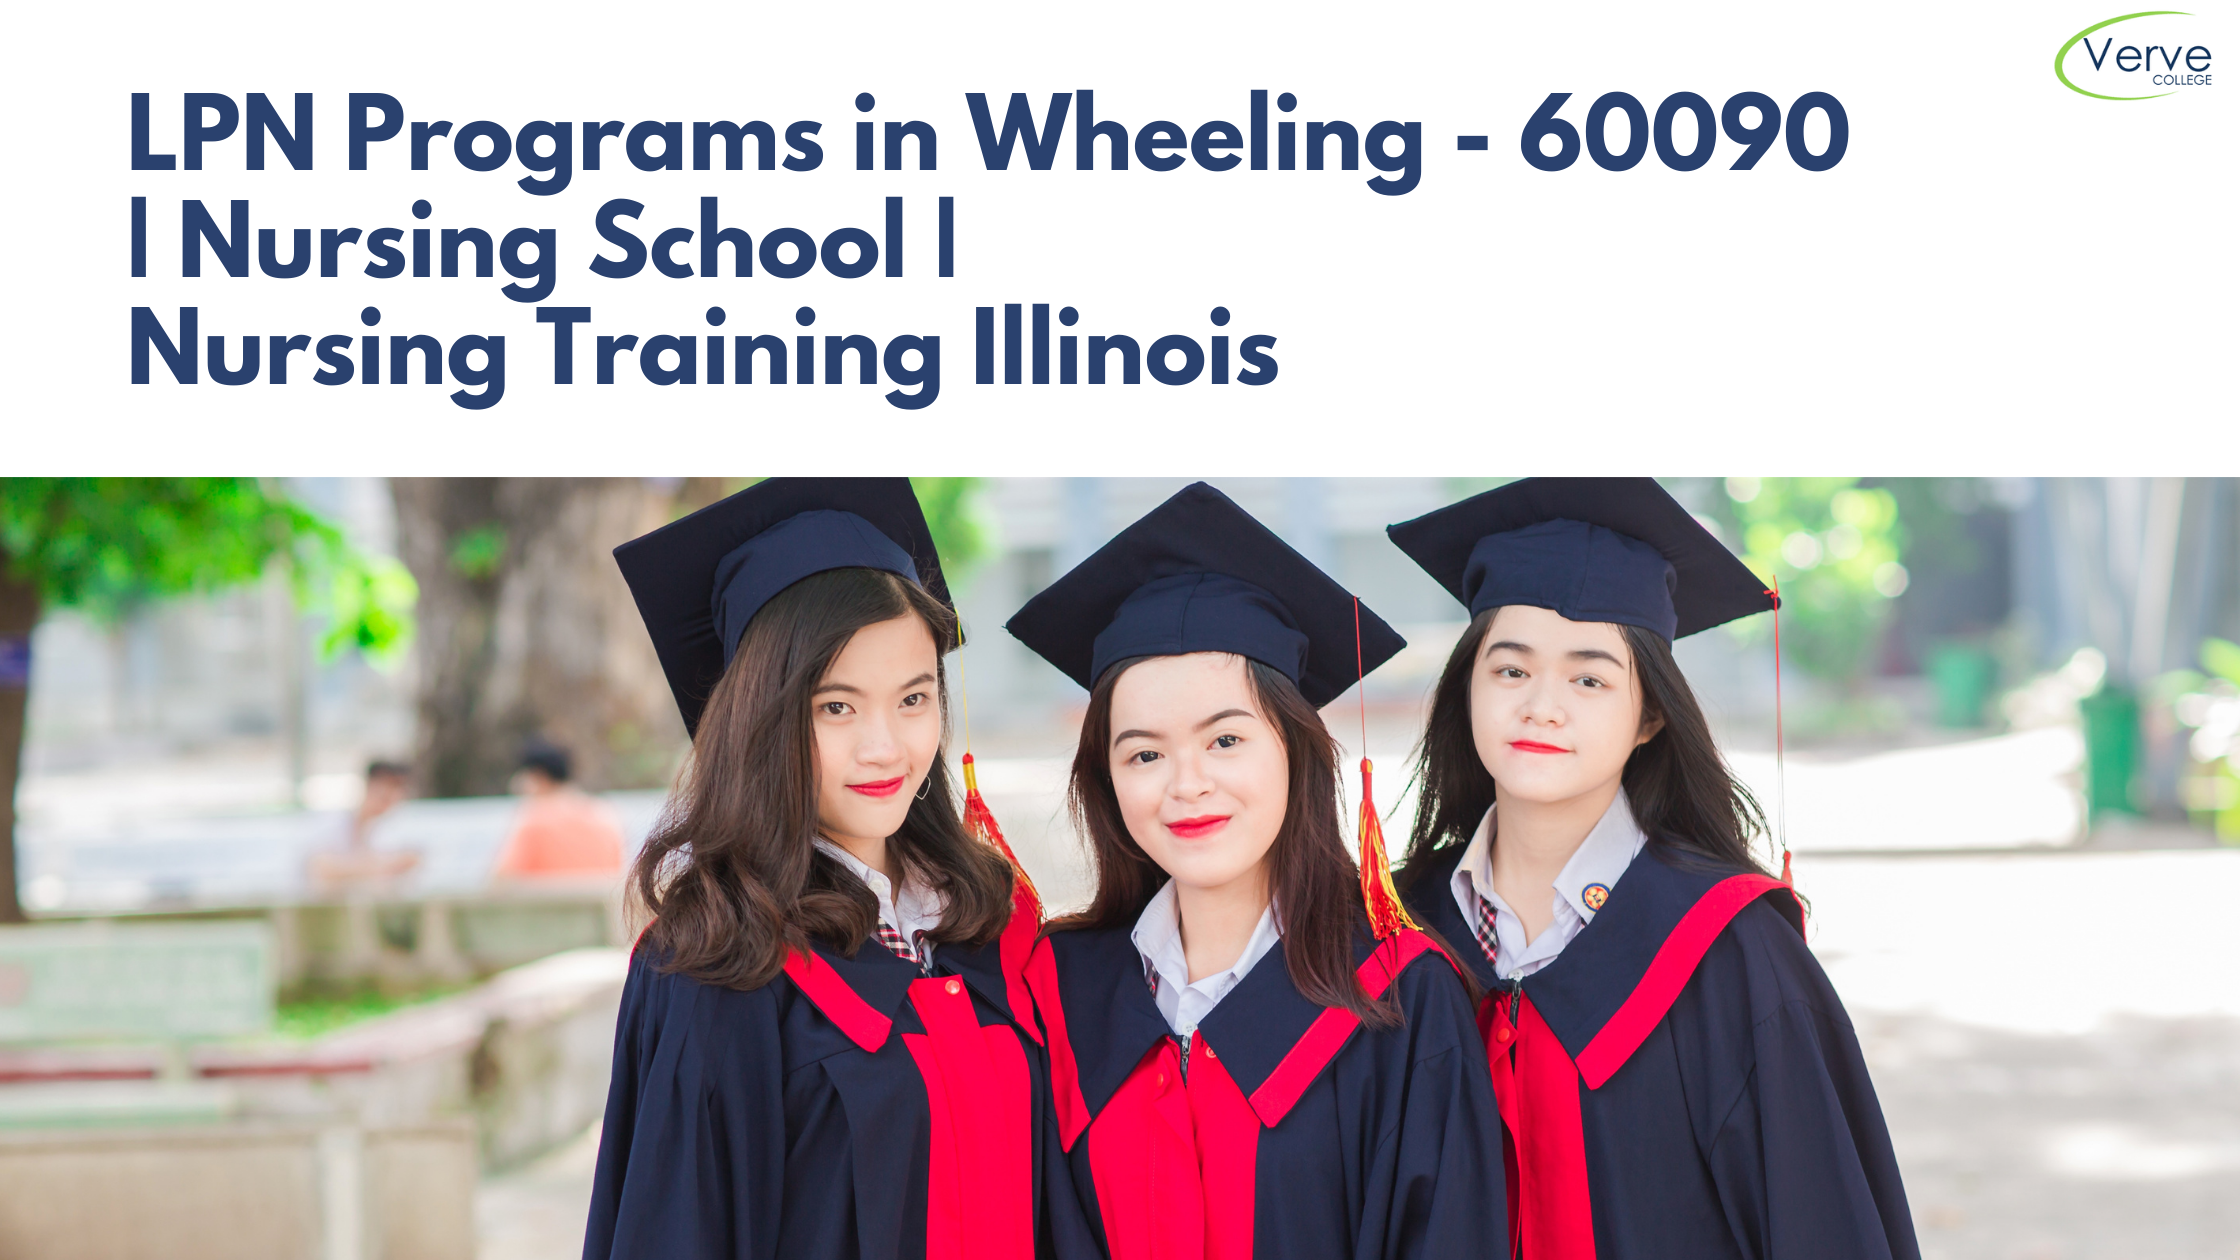 LPN Programs in Wheeling, IL – 60090 | Nursing School | Nursing Training Illinois